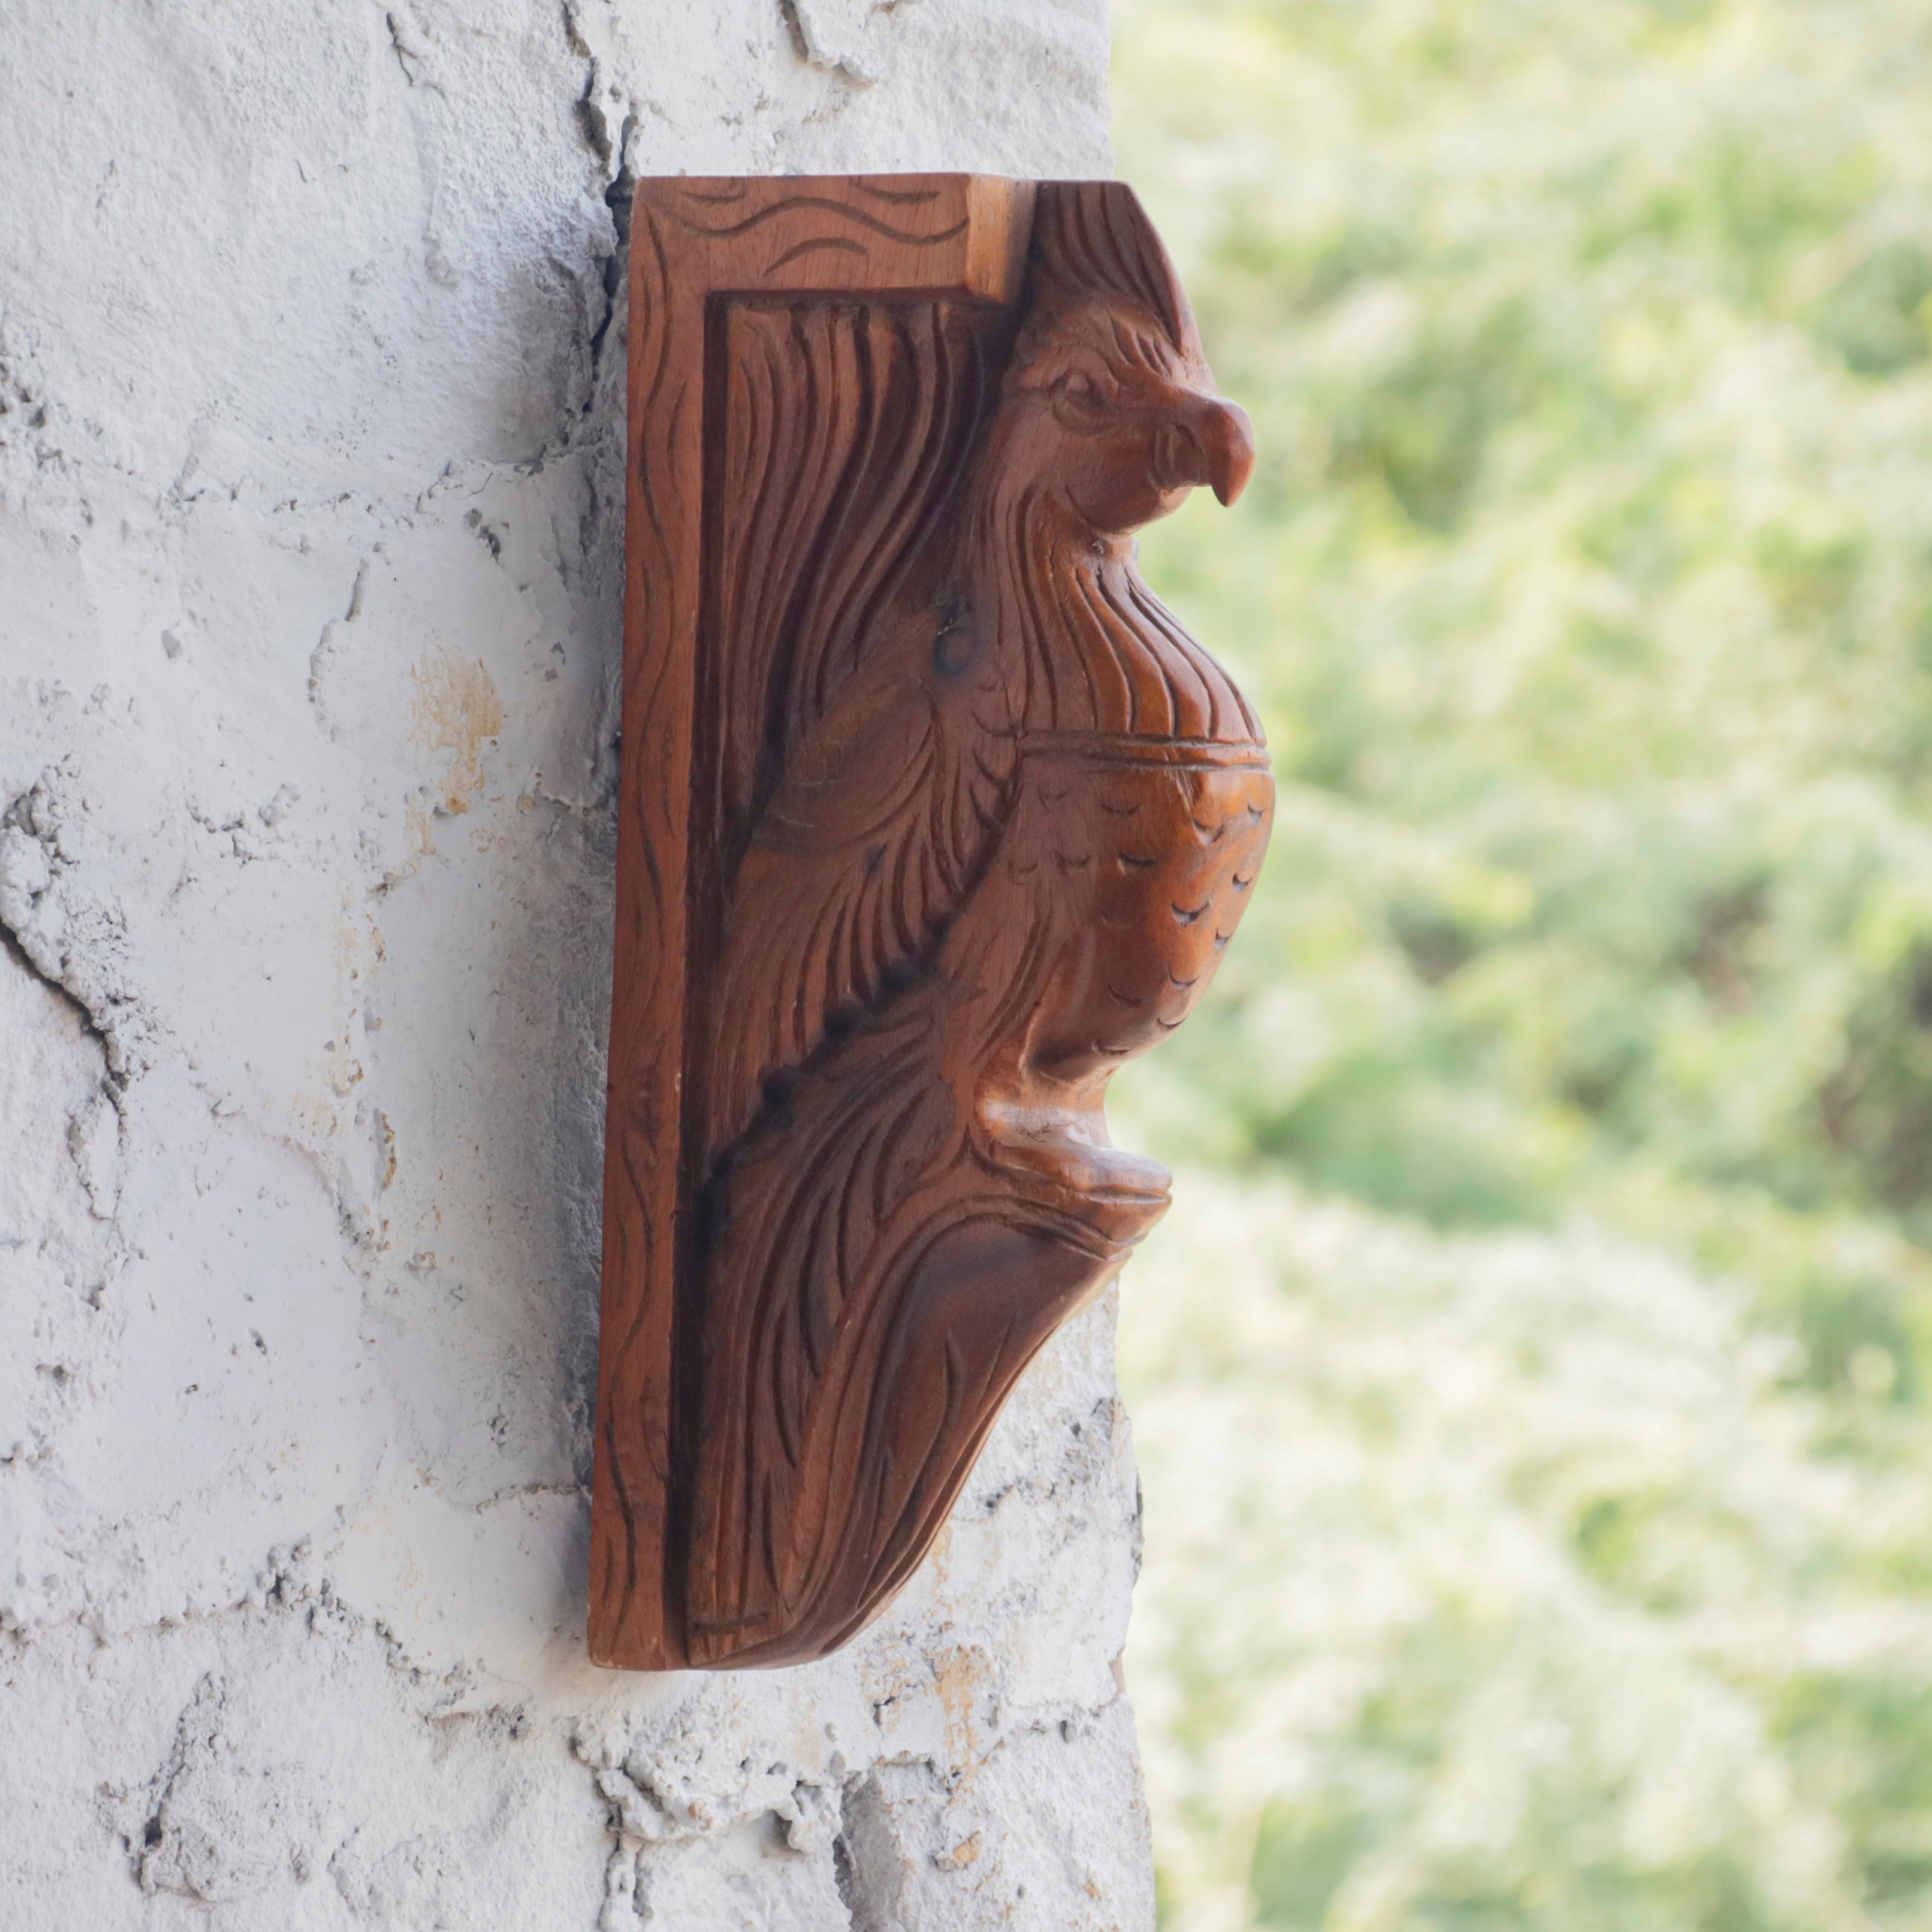 Compact intricate carved Bird Door Bracket Door Bracket